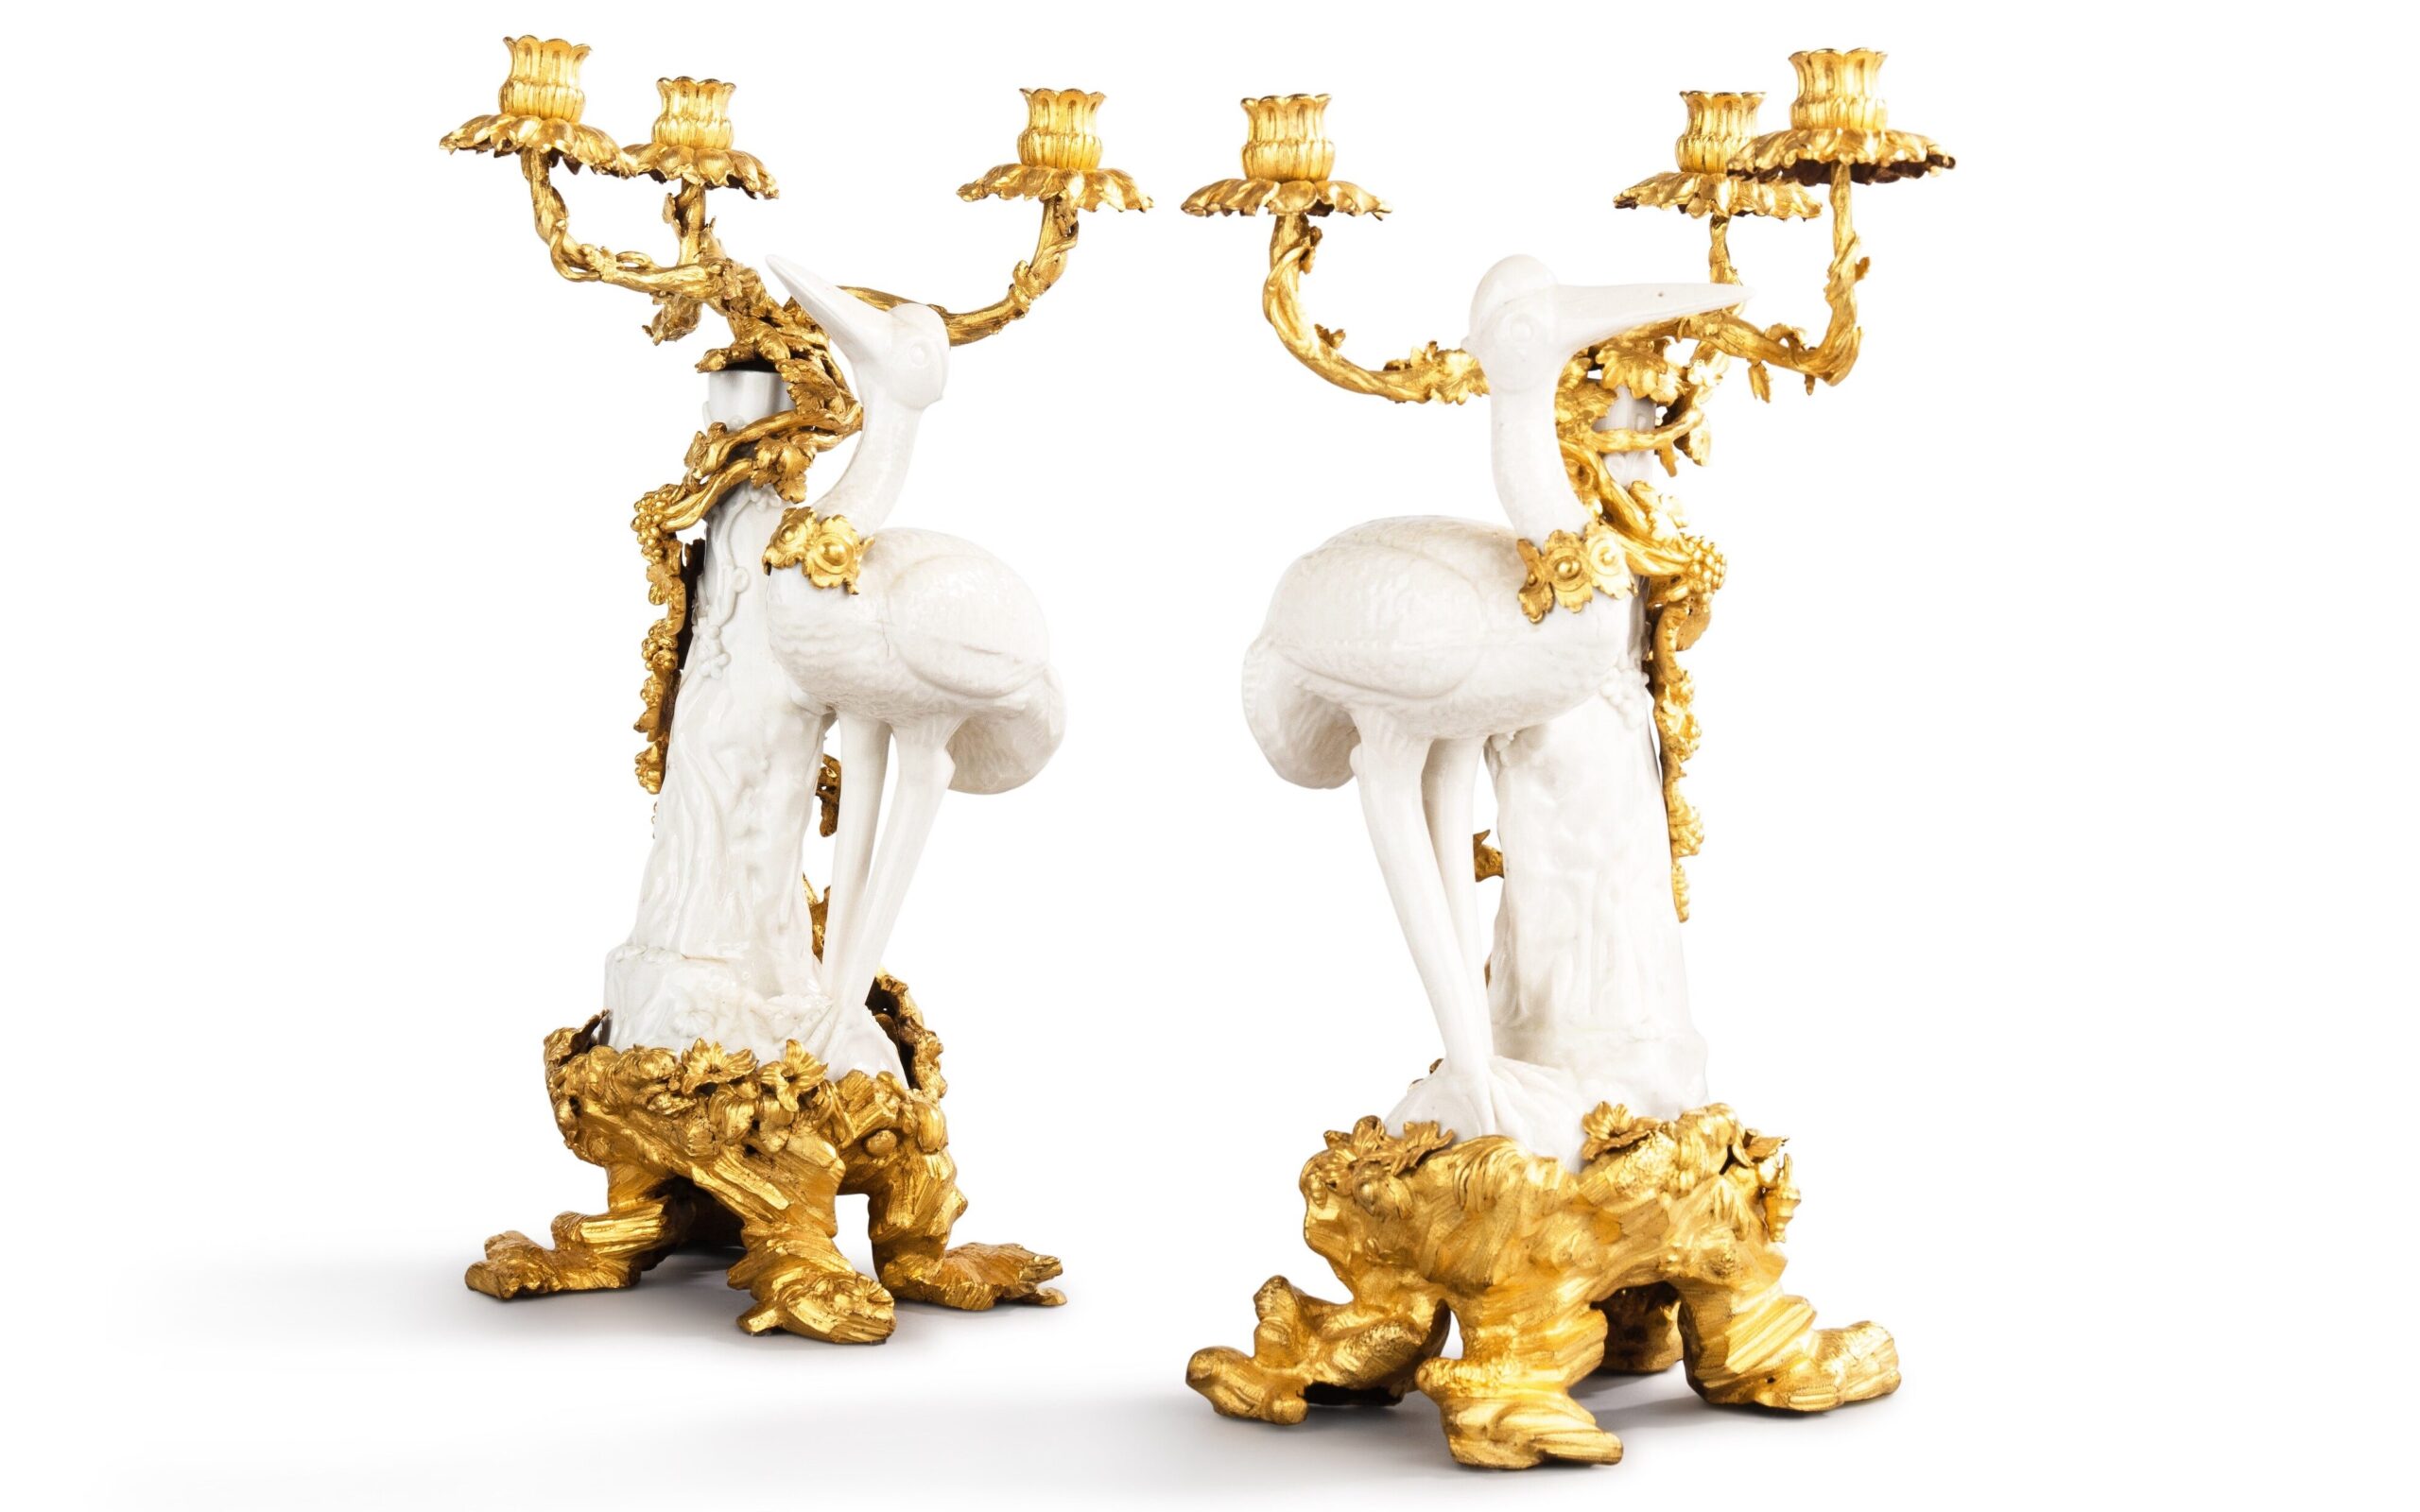 Paire de candélabres aux cigognes en porcelaine blanc de Chine, Dehua, fin du XVIIe - début du XVIIIe siècle ; monture d’époque Louis XV, vers 1750. Porcelaine et bronze doré, 44 cm. Estimé : 200 000/400 000 €. © Sotheby’s / ArtDigital Studio